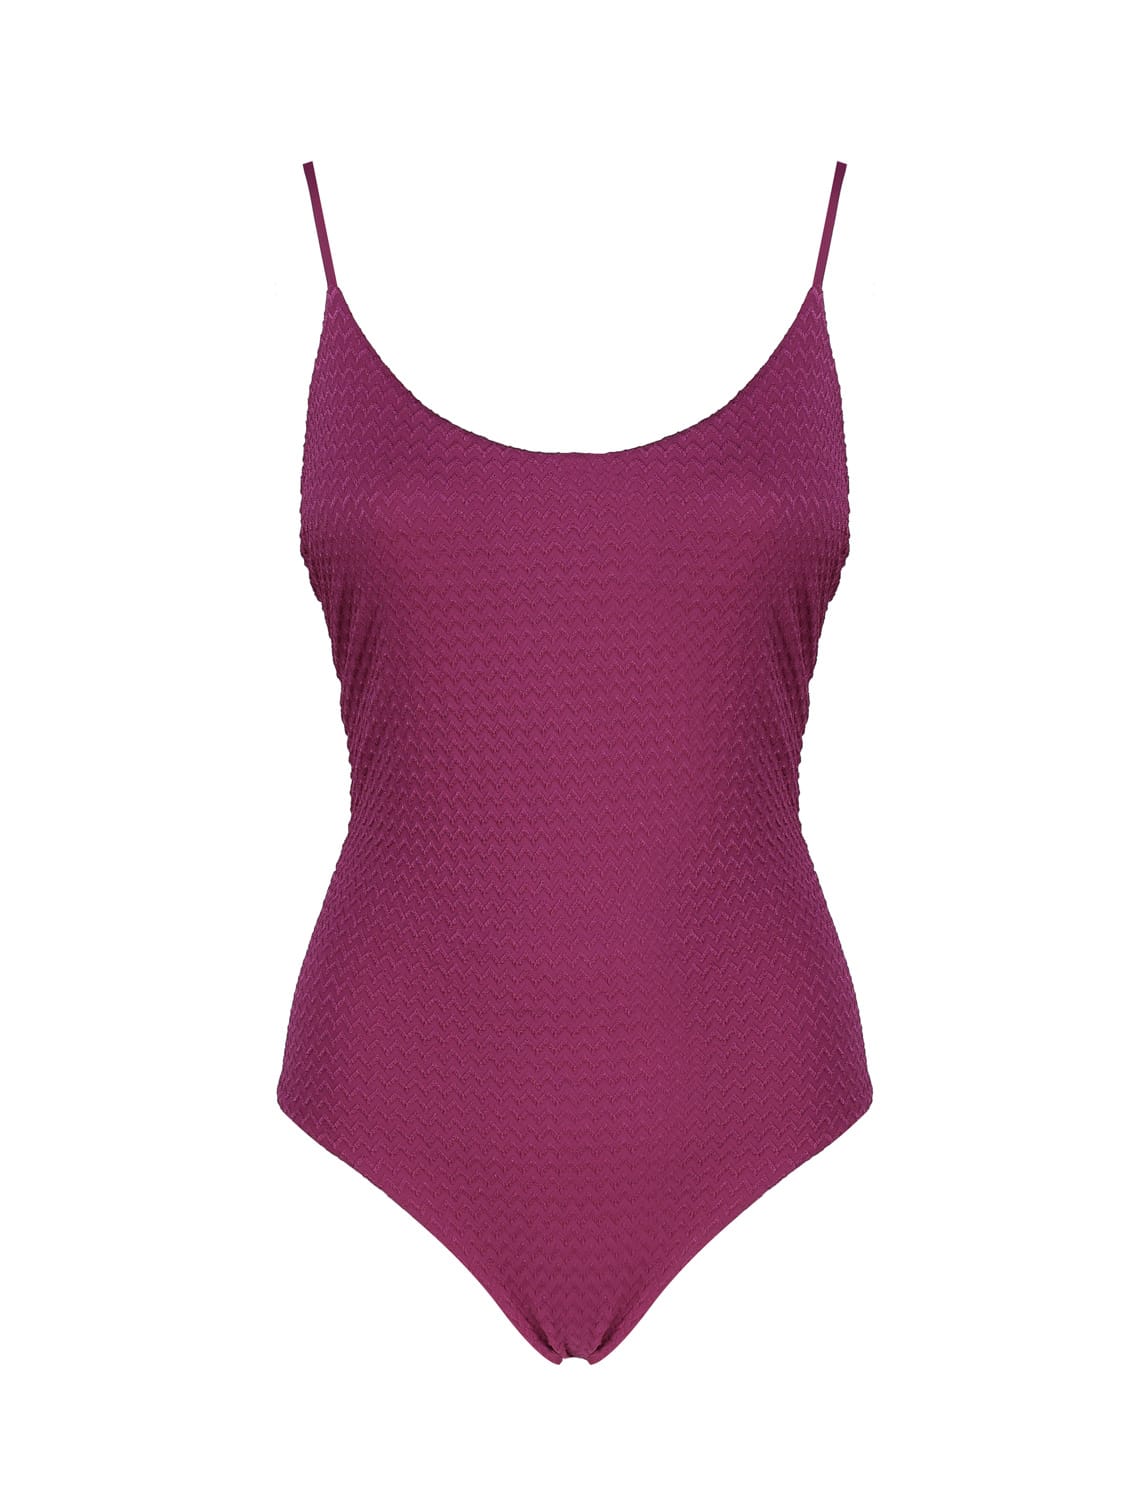 Fisico Cristina Ferrari Solid Color One-piece Swimsuit In Sangria